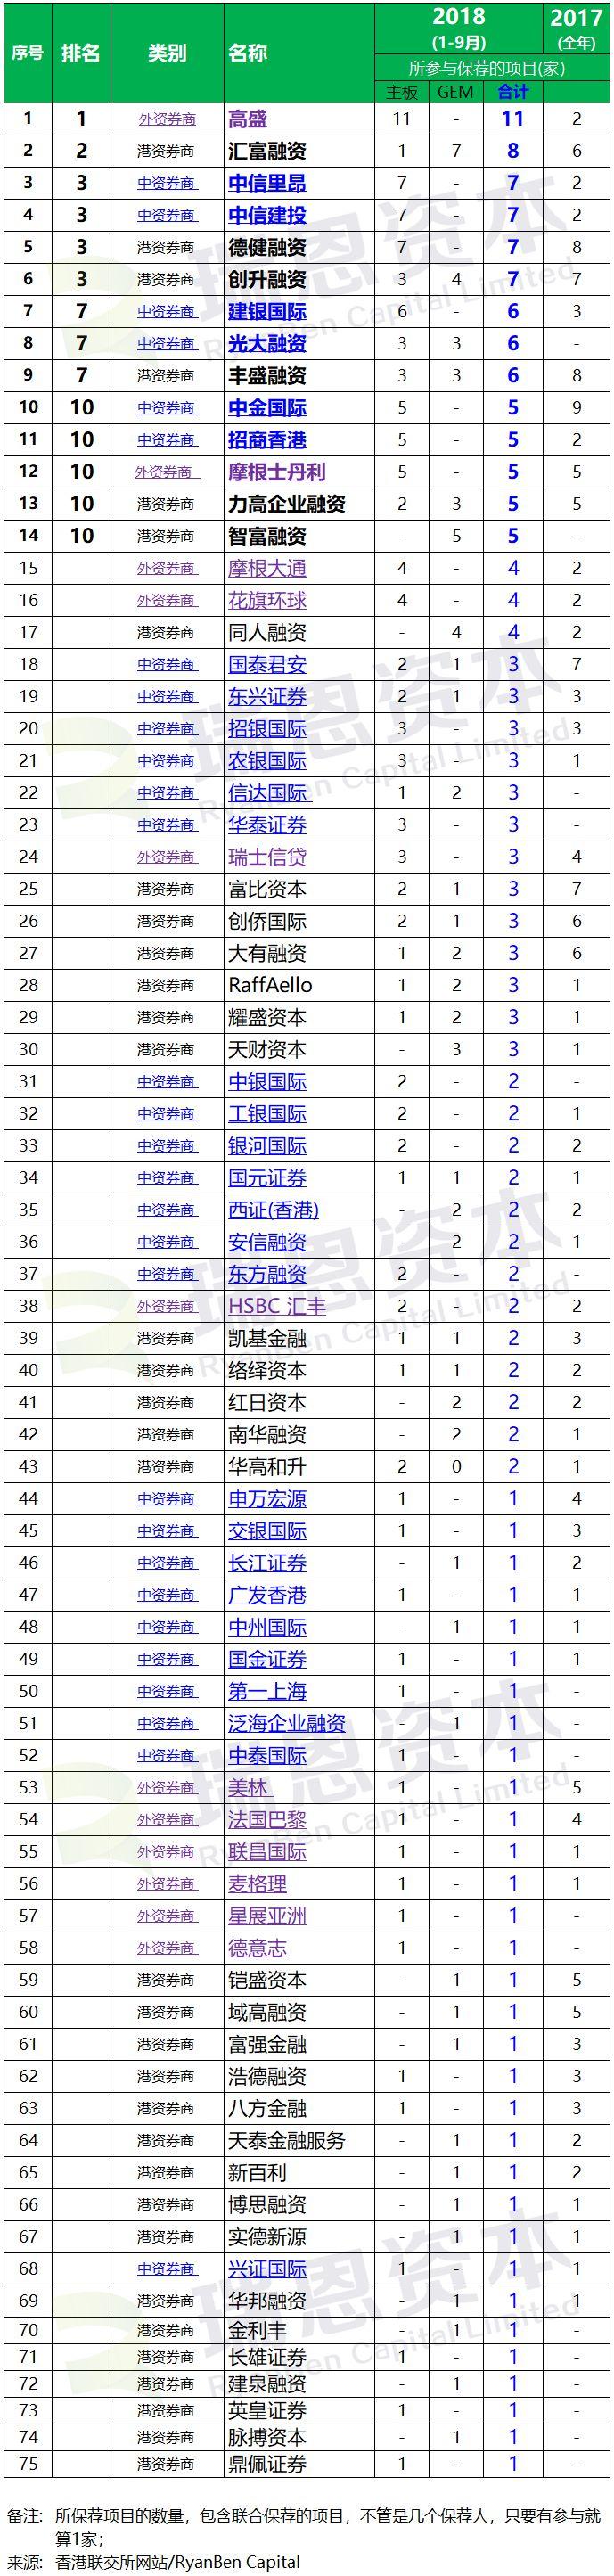 香港IPO上市中介团队.券商保荐人排行榜 (2018年前三季)